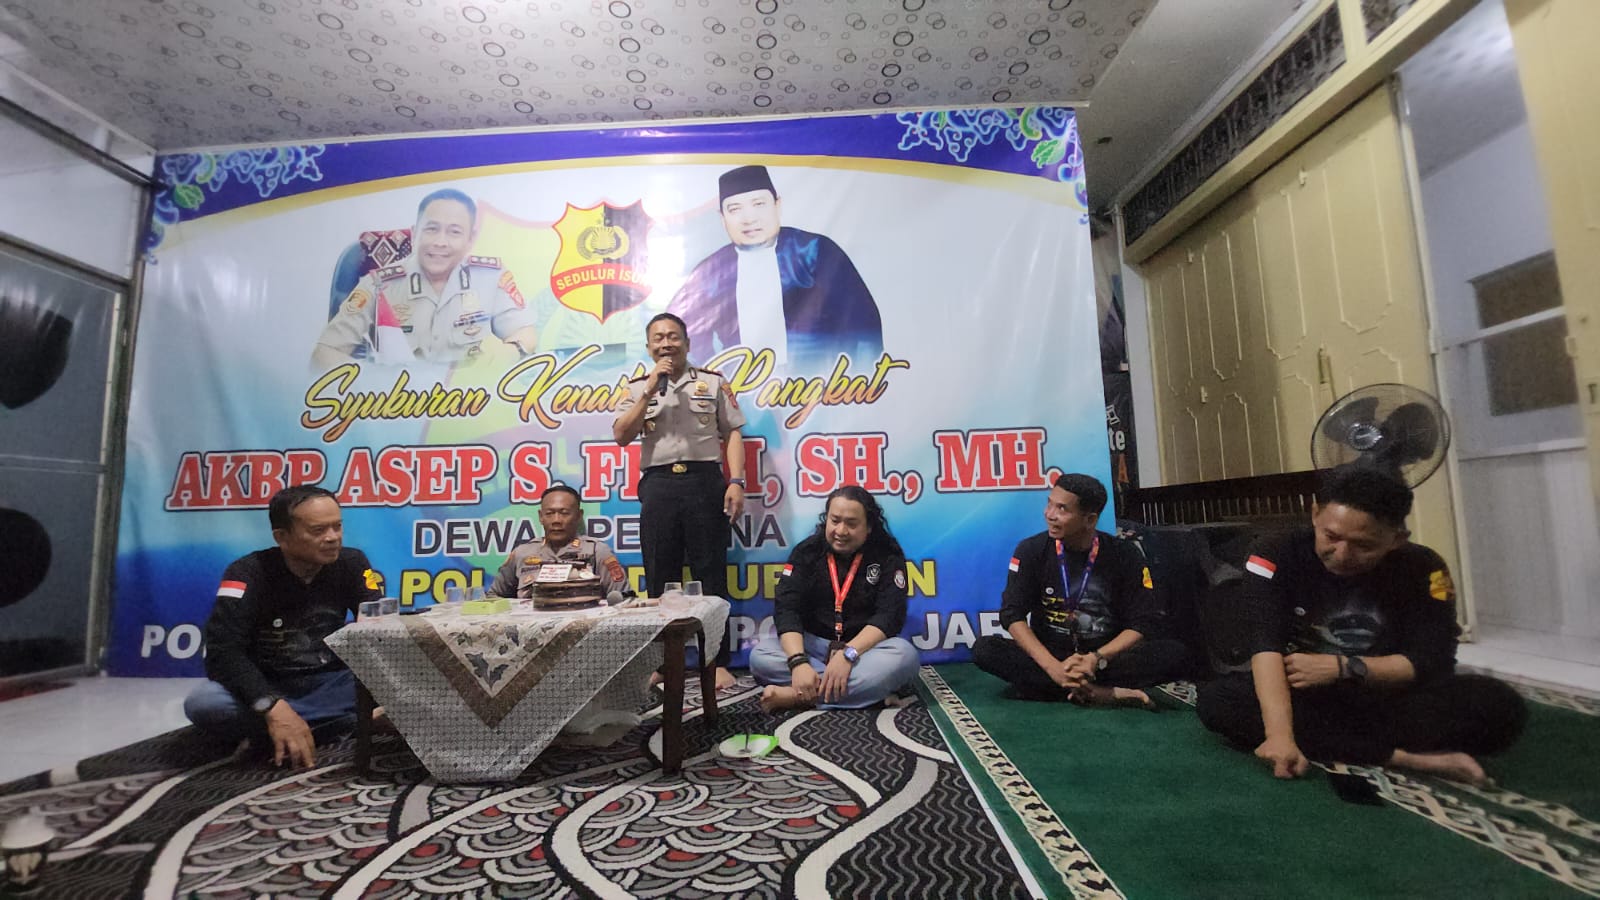 Komunitas Polri Sedulur Isun Cirebon Dukung Tugas Polisi sebagai Pelayan Masyarakat